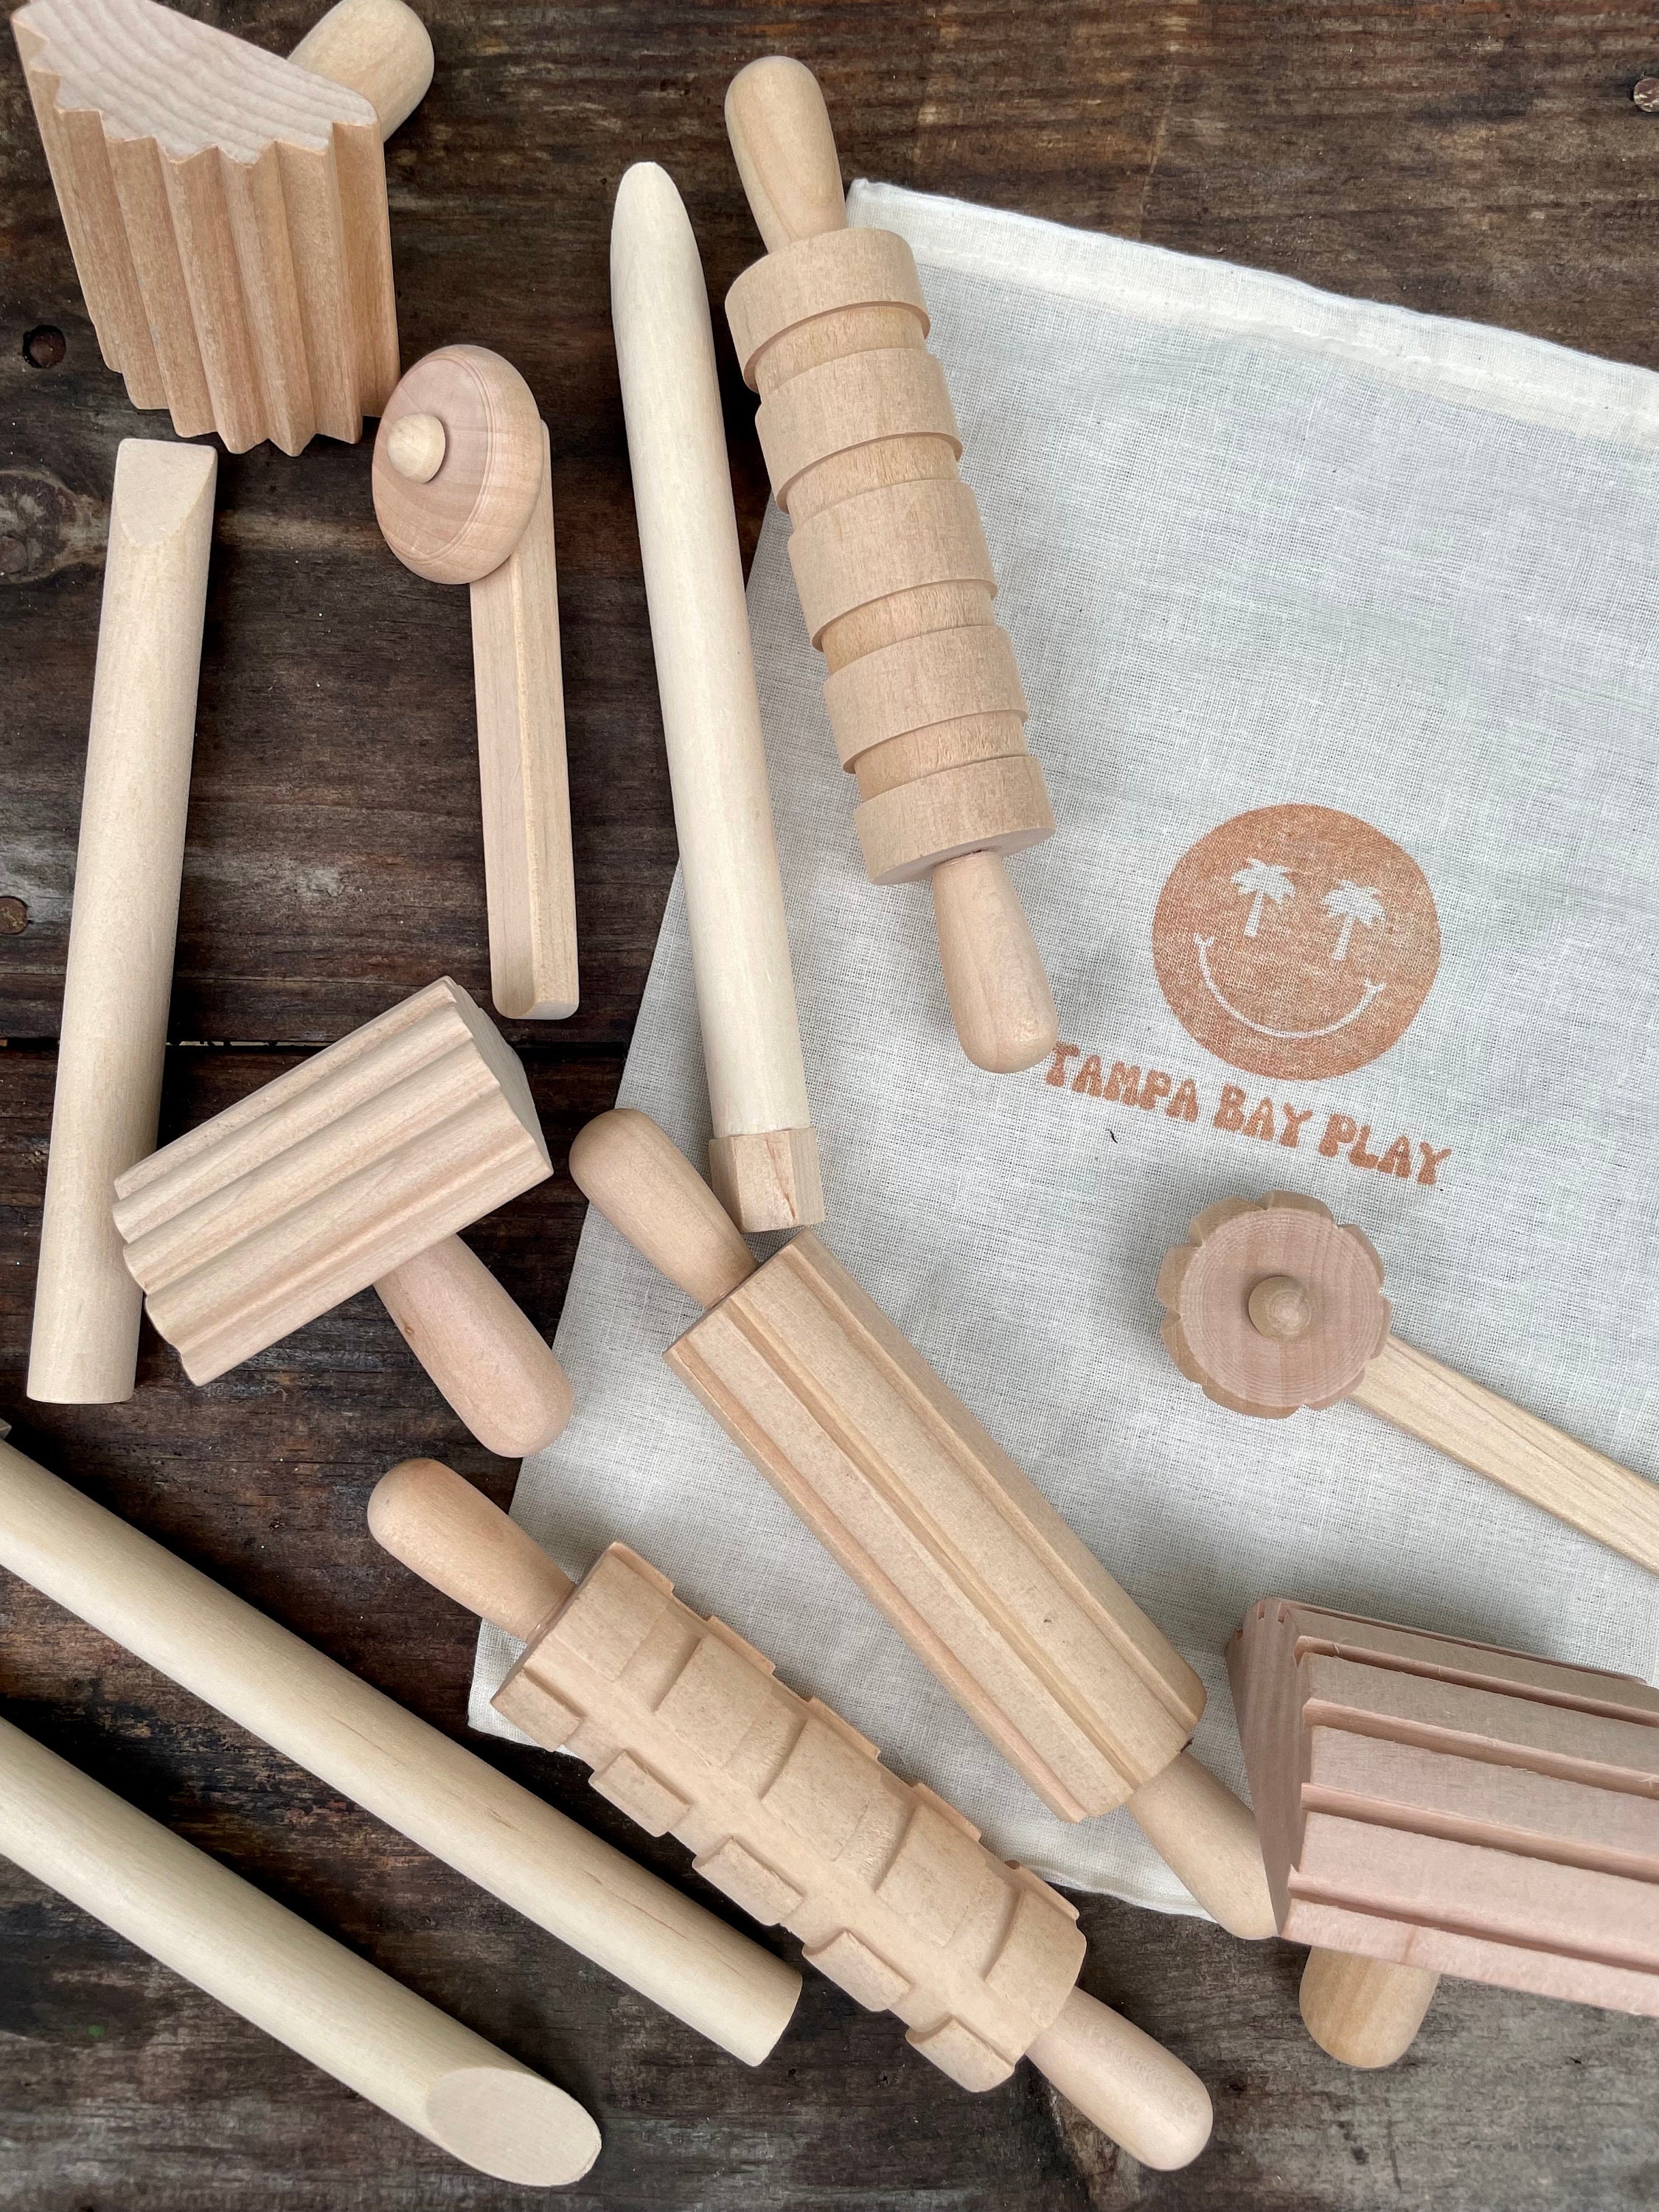 Wooden Playdough Tool Kit - 12 pieces